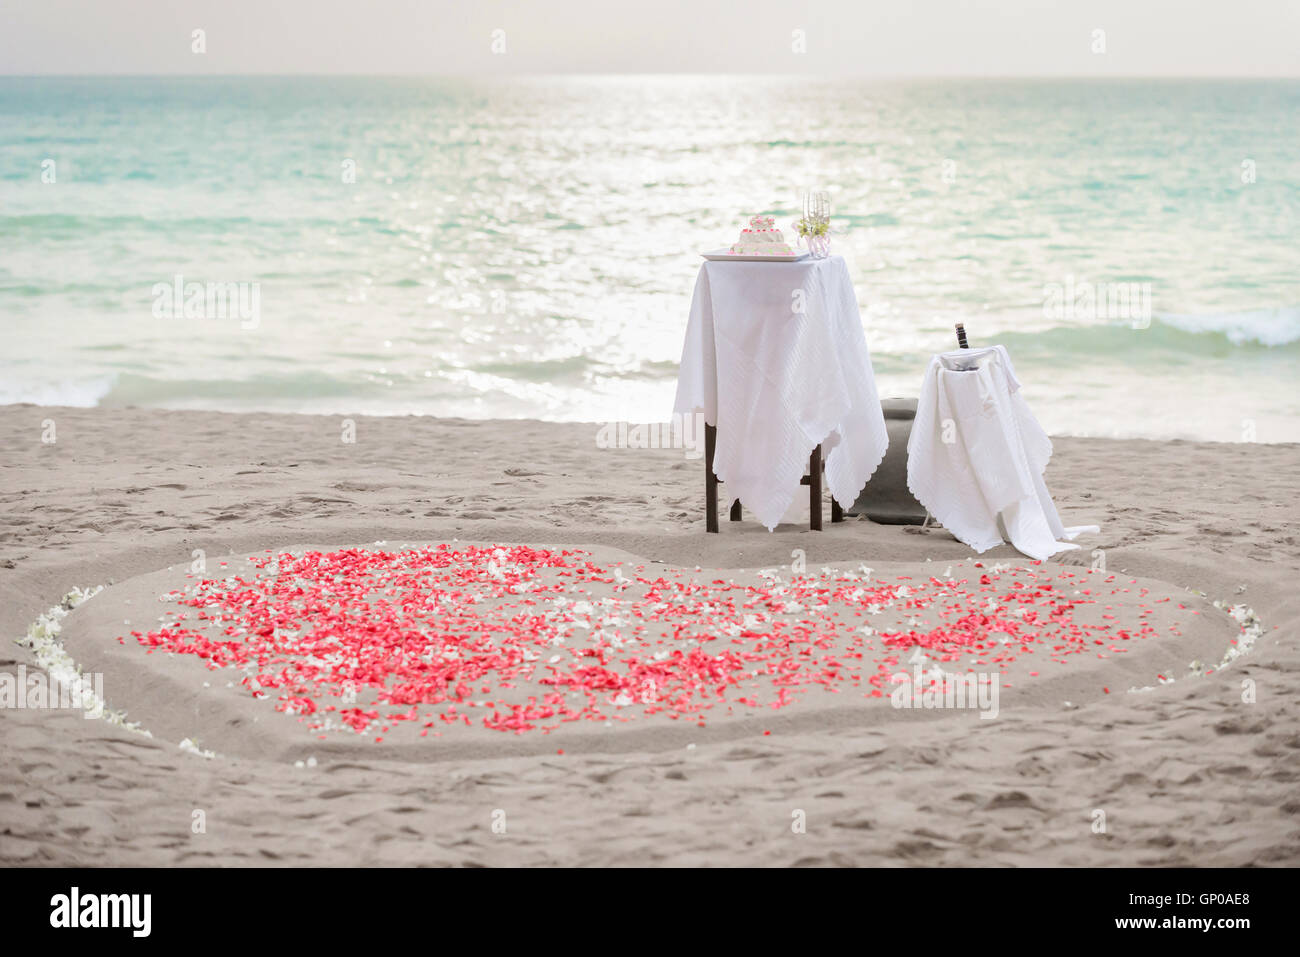 Tabella per la cerimonia di nozze, torta di nozze, champagne e focolare forma di bianco e petali di colore rosso sulla sabbia, il tramonto. Copia dello spazio. Foto Stock